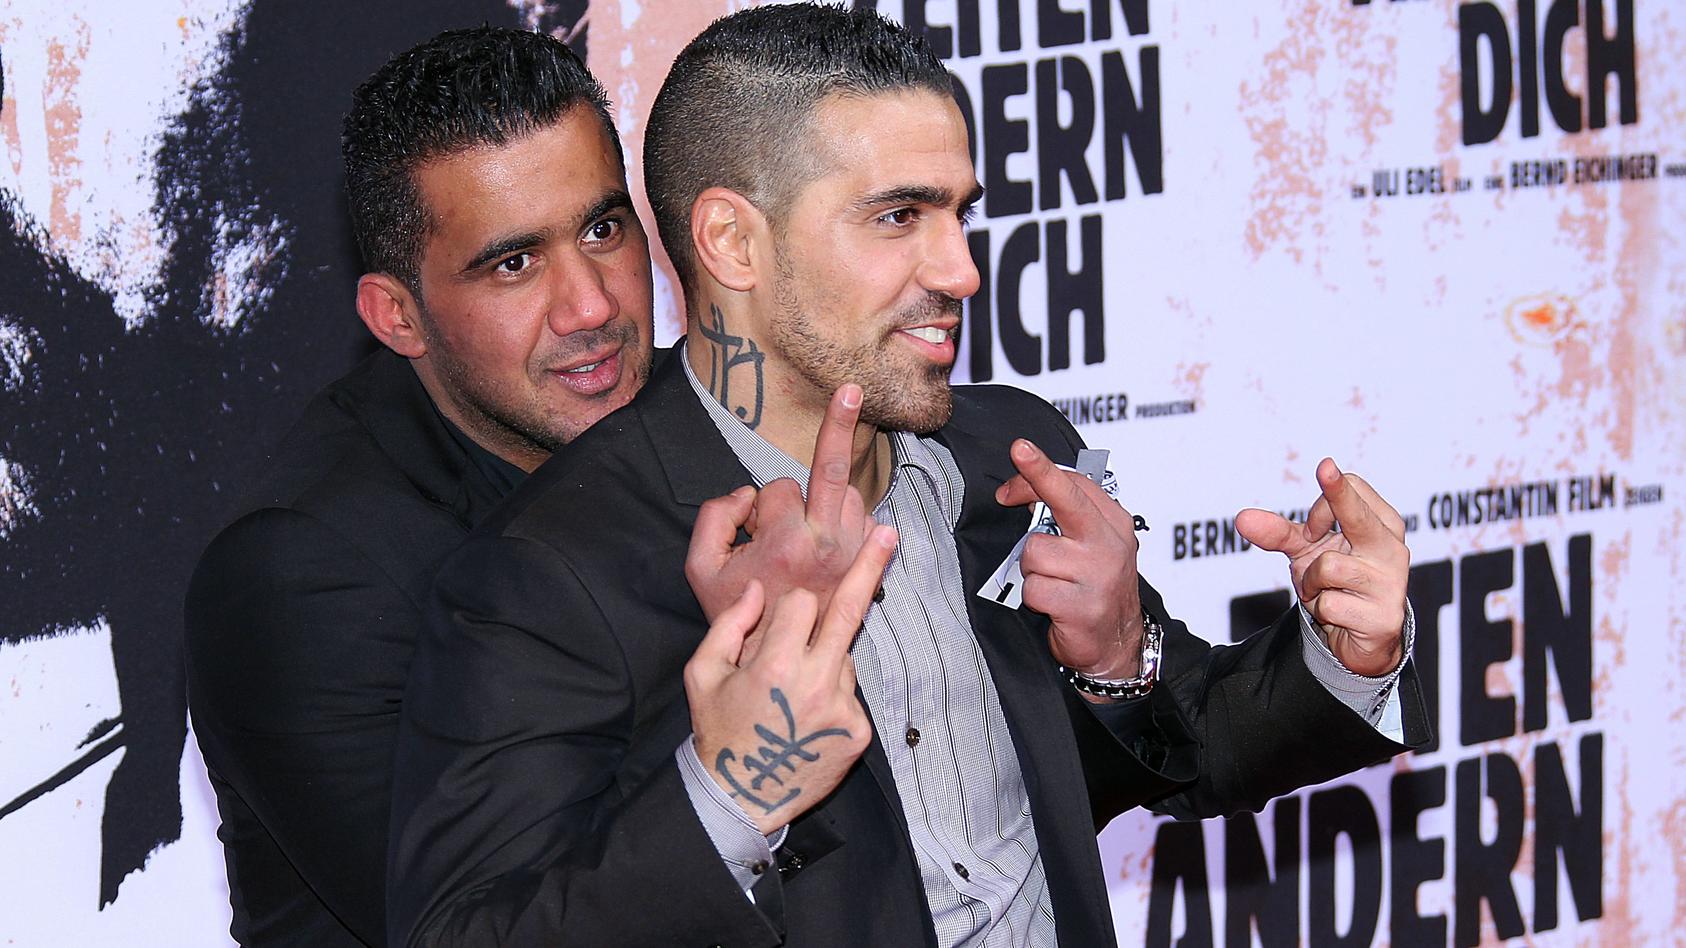 Bushido und Arafat Abou-Chaker bei der Premiere des Films "Zeiten ändern Dich" im Februar 2010 in Berlin.